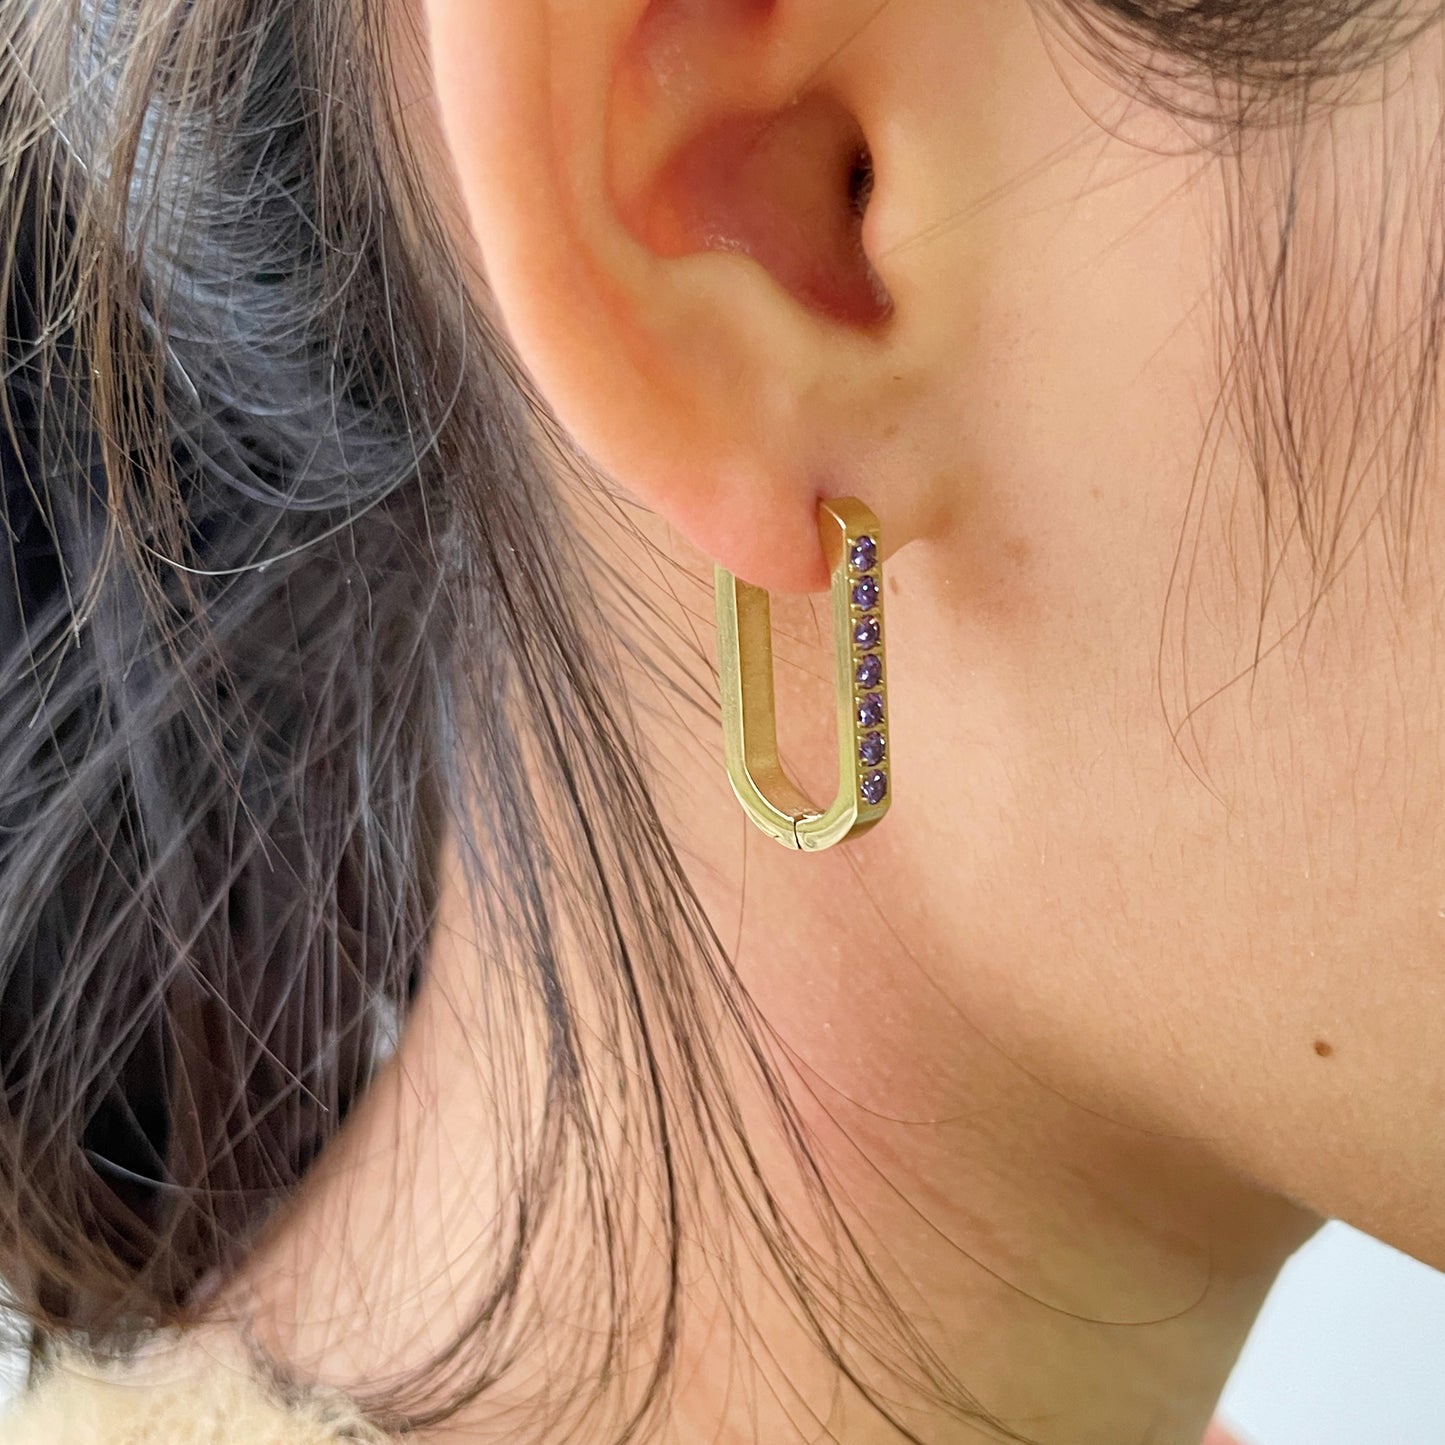 RFB0154 Earrings